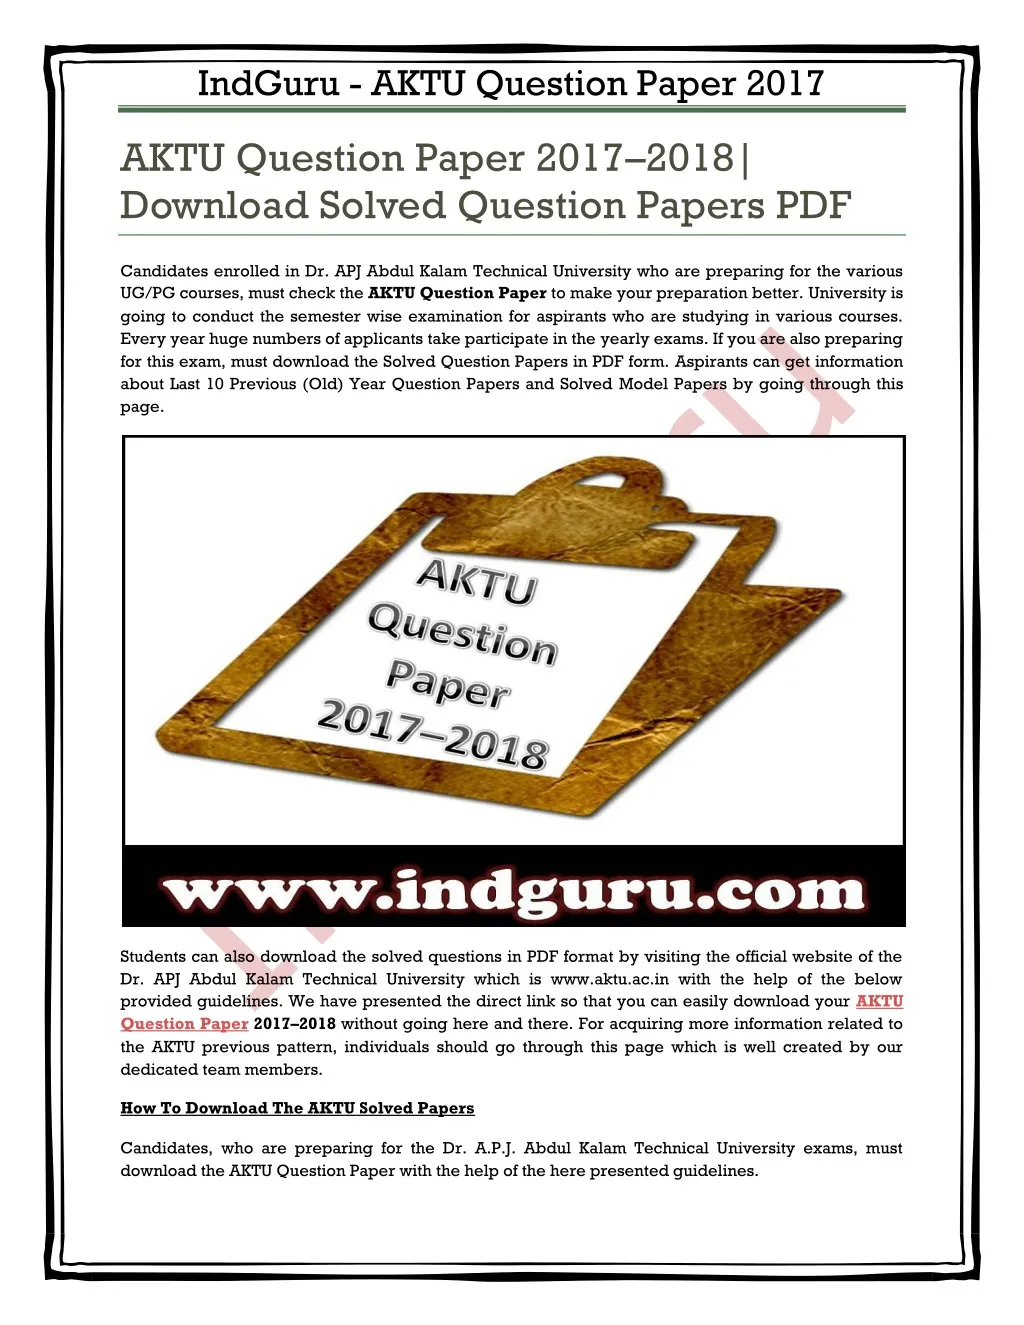 indguru aktu question paper 2017